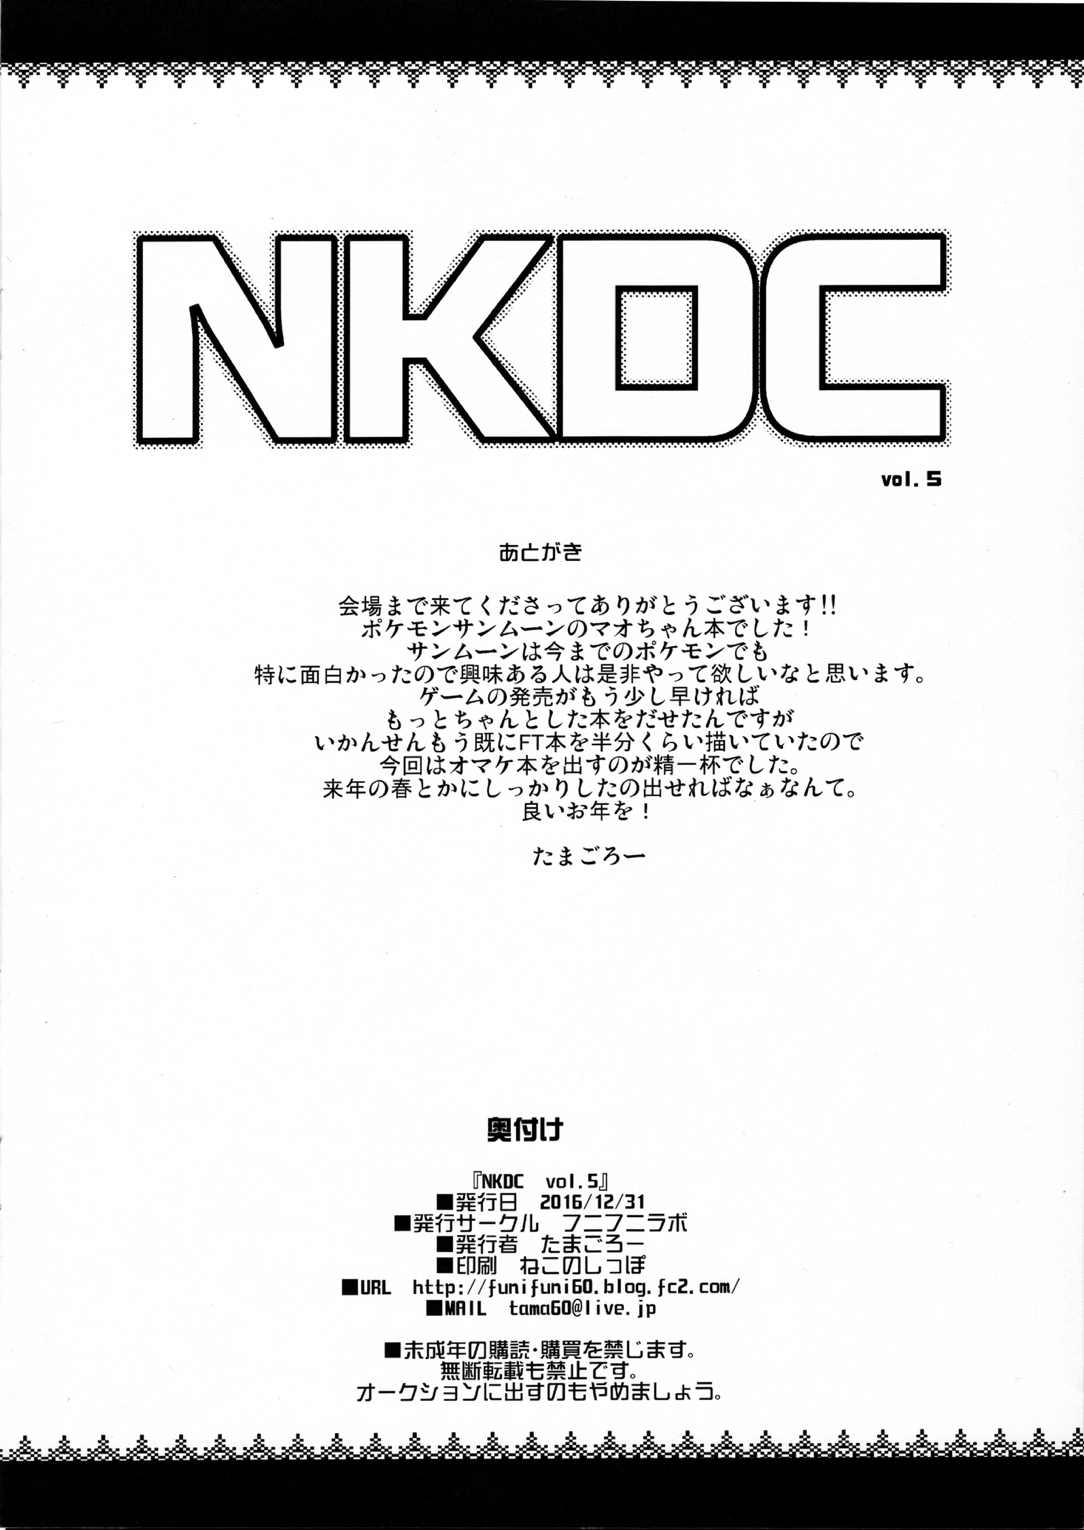 NKDC Vol. 5 7